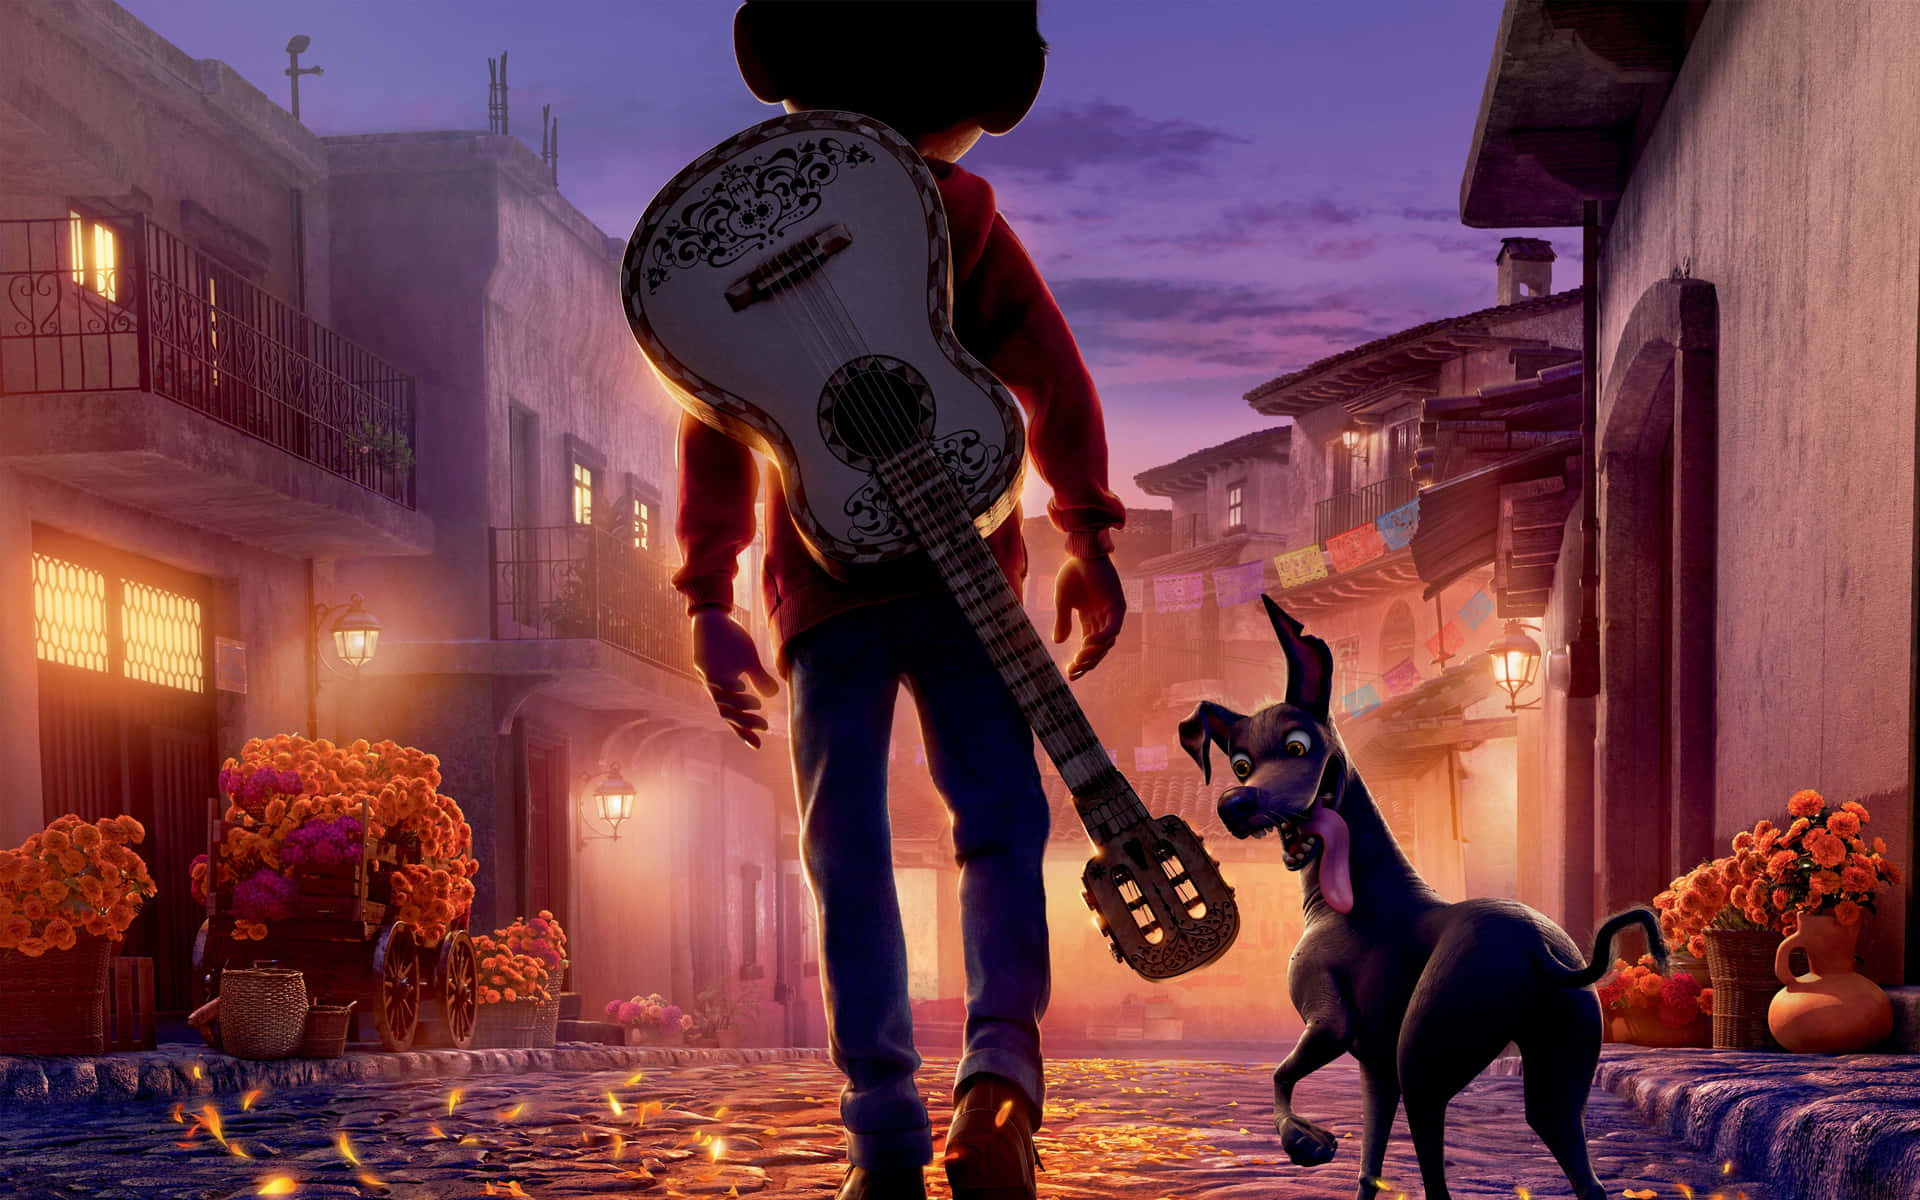 Betretensie Das Reich Der Toten Mit Einem Unvergesslichen Abenteuer In Disney•pixar's 